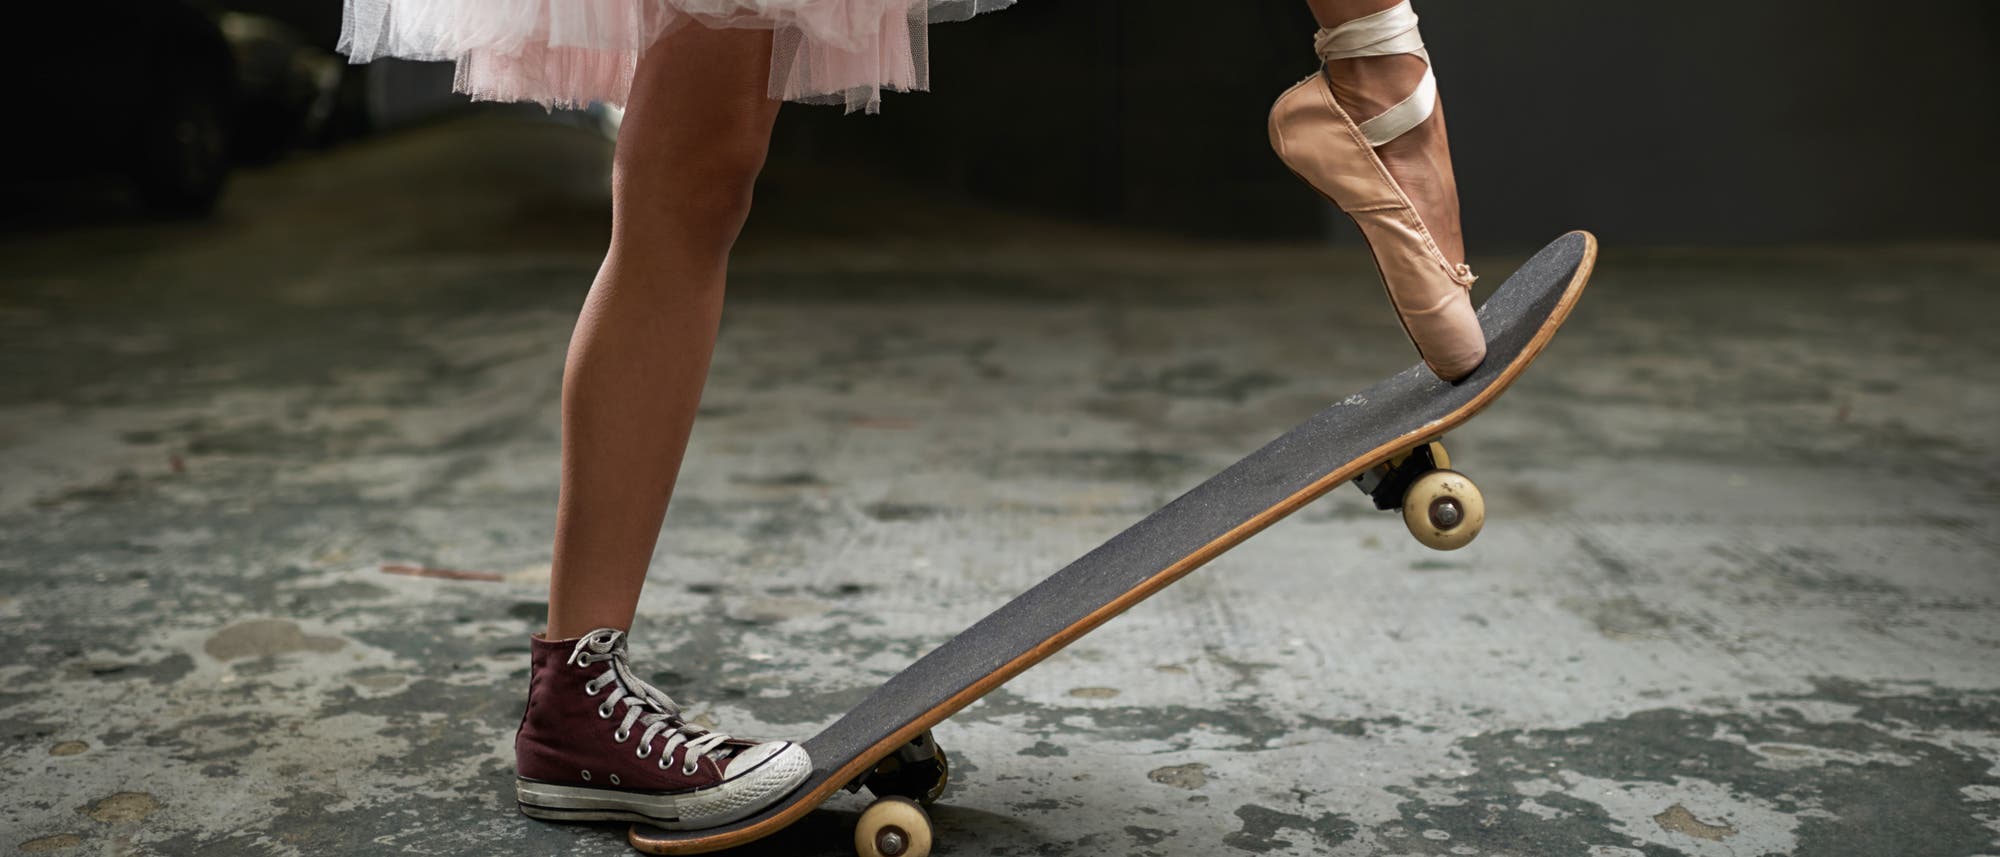 Junge Frau auf einem Skateboard, die am rechten Fuß einen Turnschuh und am linken Fuß einen Ballettschuh trägt.